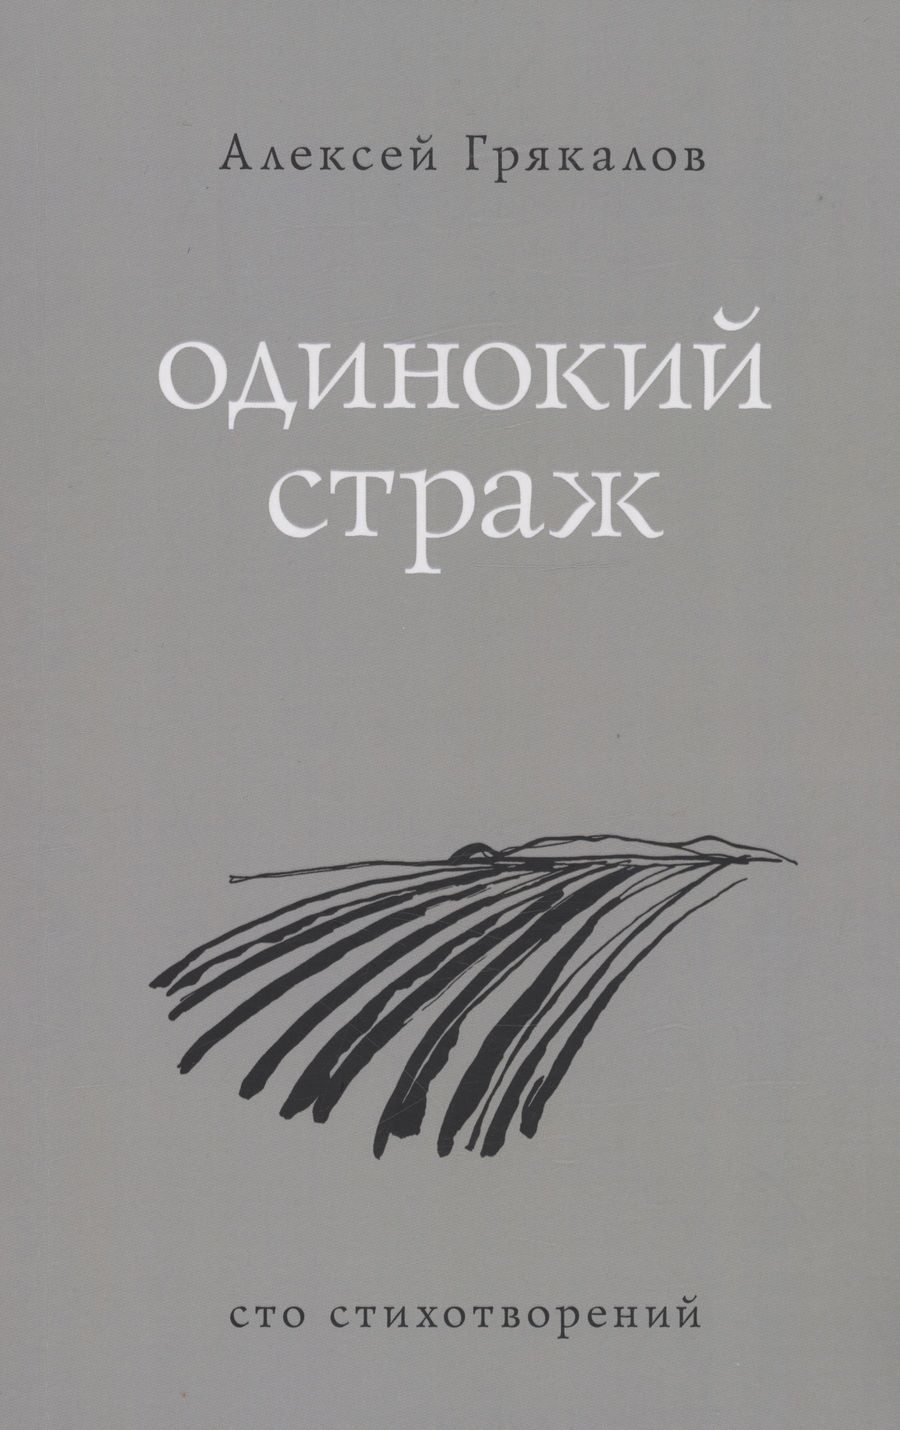 Обложка книги "Грякалов: Одинокий страж"